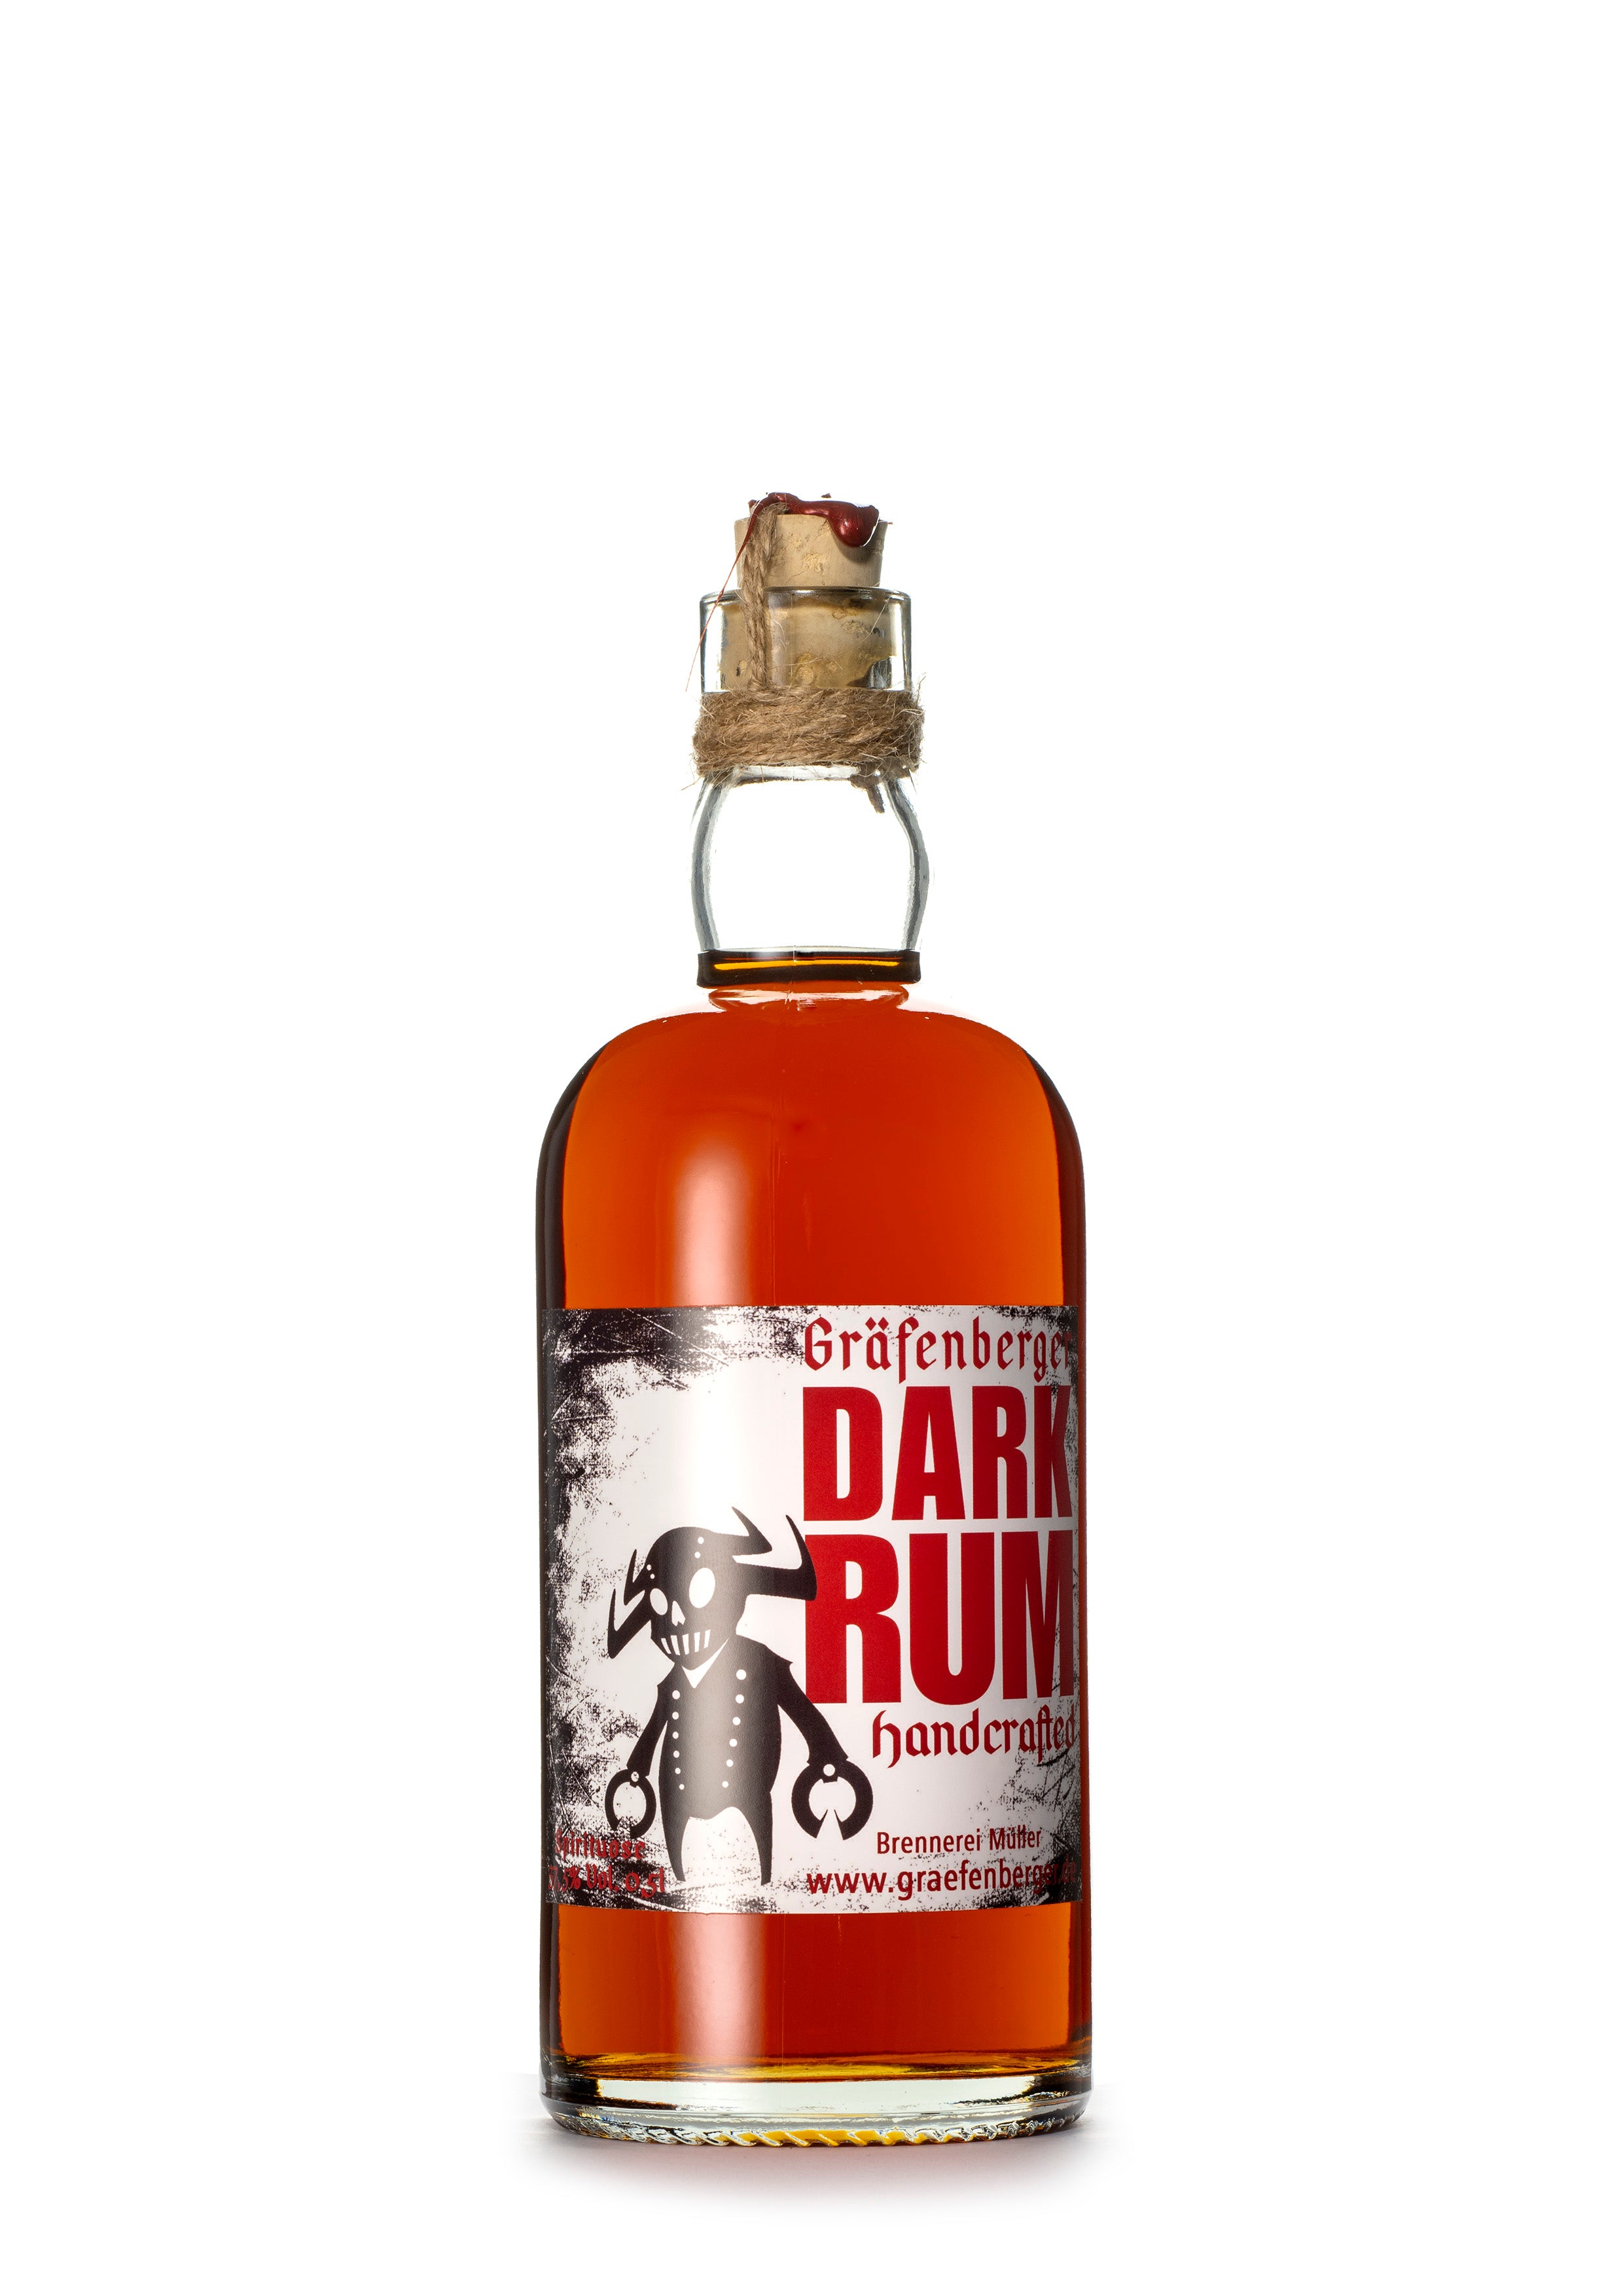 Dark Rum